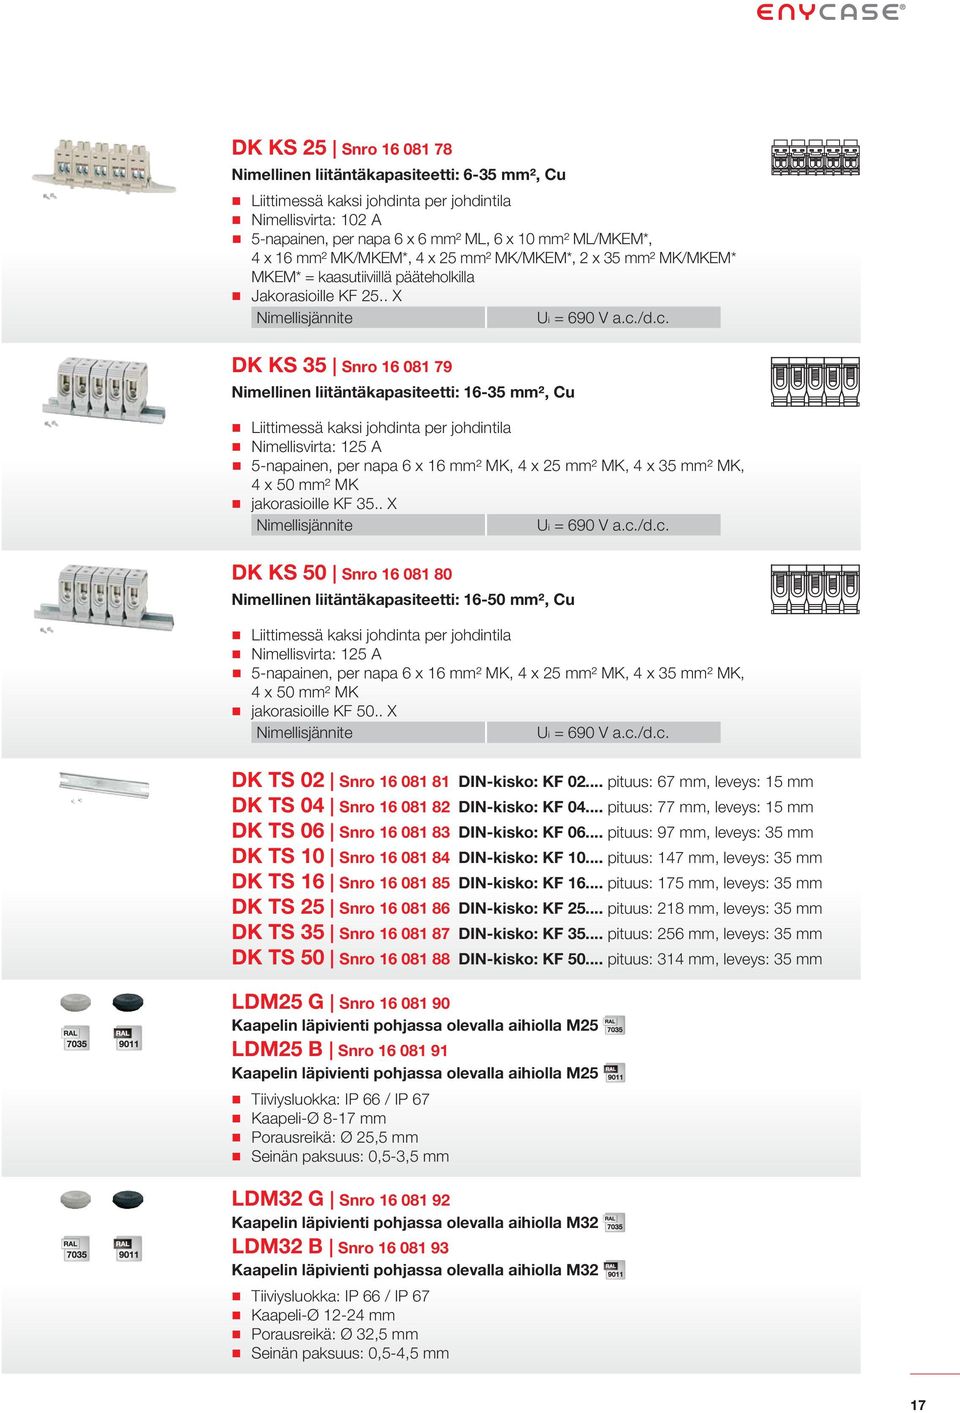 . X DK KS 35 Snro 16 081 79 Nimellinen liitäntäkapasiteetti: 16-35 mm², Cu : 125 A 5-napainen, per napa 6 x 16 mm² MK, 4 x 25 mm² MK, 4 x 35 mm² MK, 4 x 50 mm² MK jakorasioille KF 35.